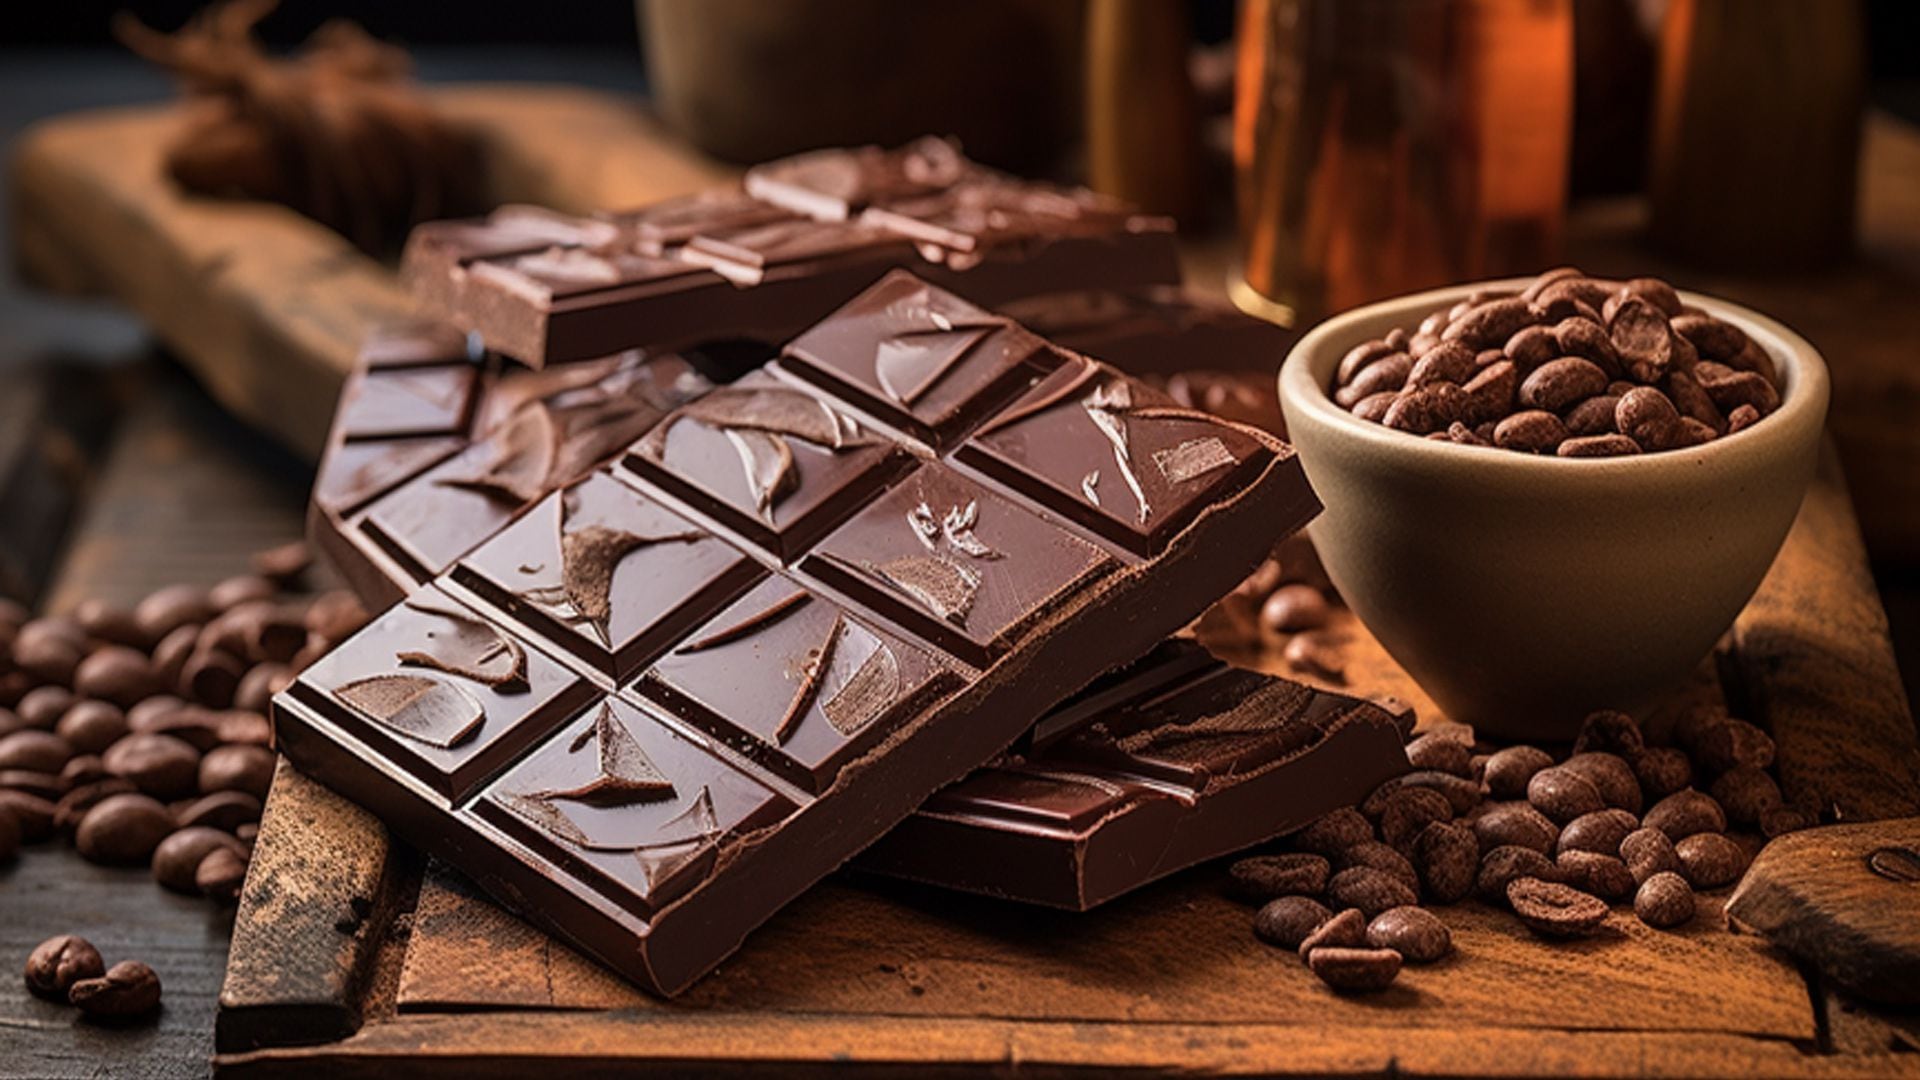 Los investigadores de la Escuela de Medicina de Harvard descubrieron que consumir dos tazas de chocolate caliente al día podría ayudar a las funciones cognitivas de los adultos mayores
(Imagen Ilustrativa Infobae)